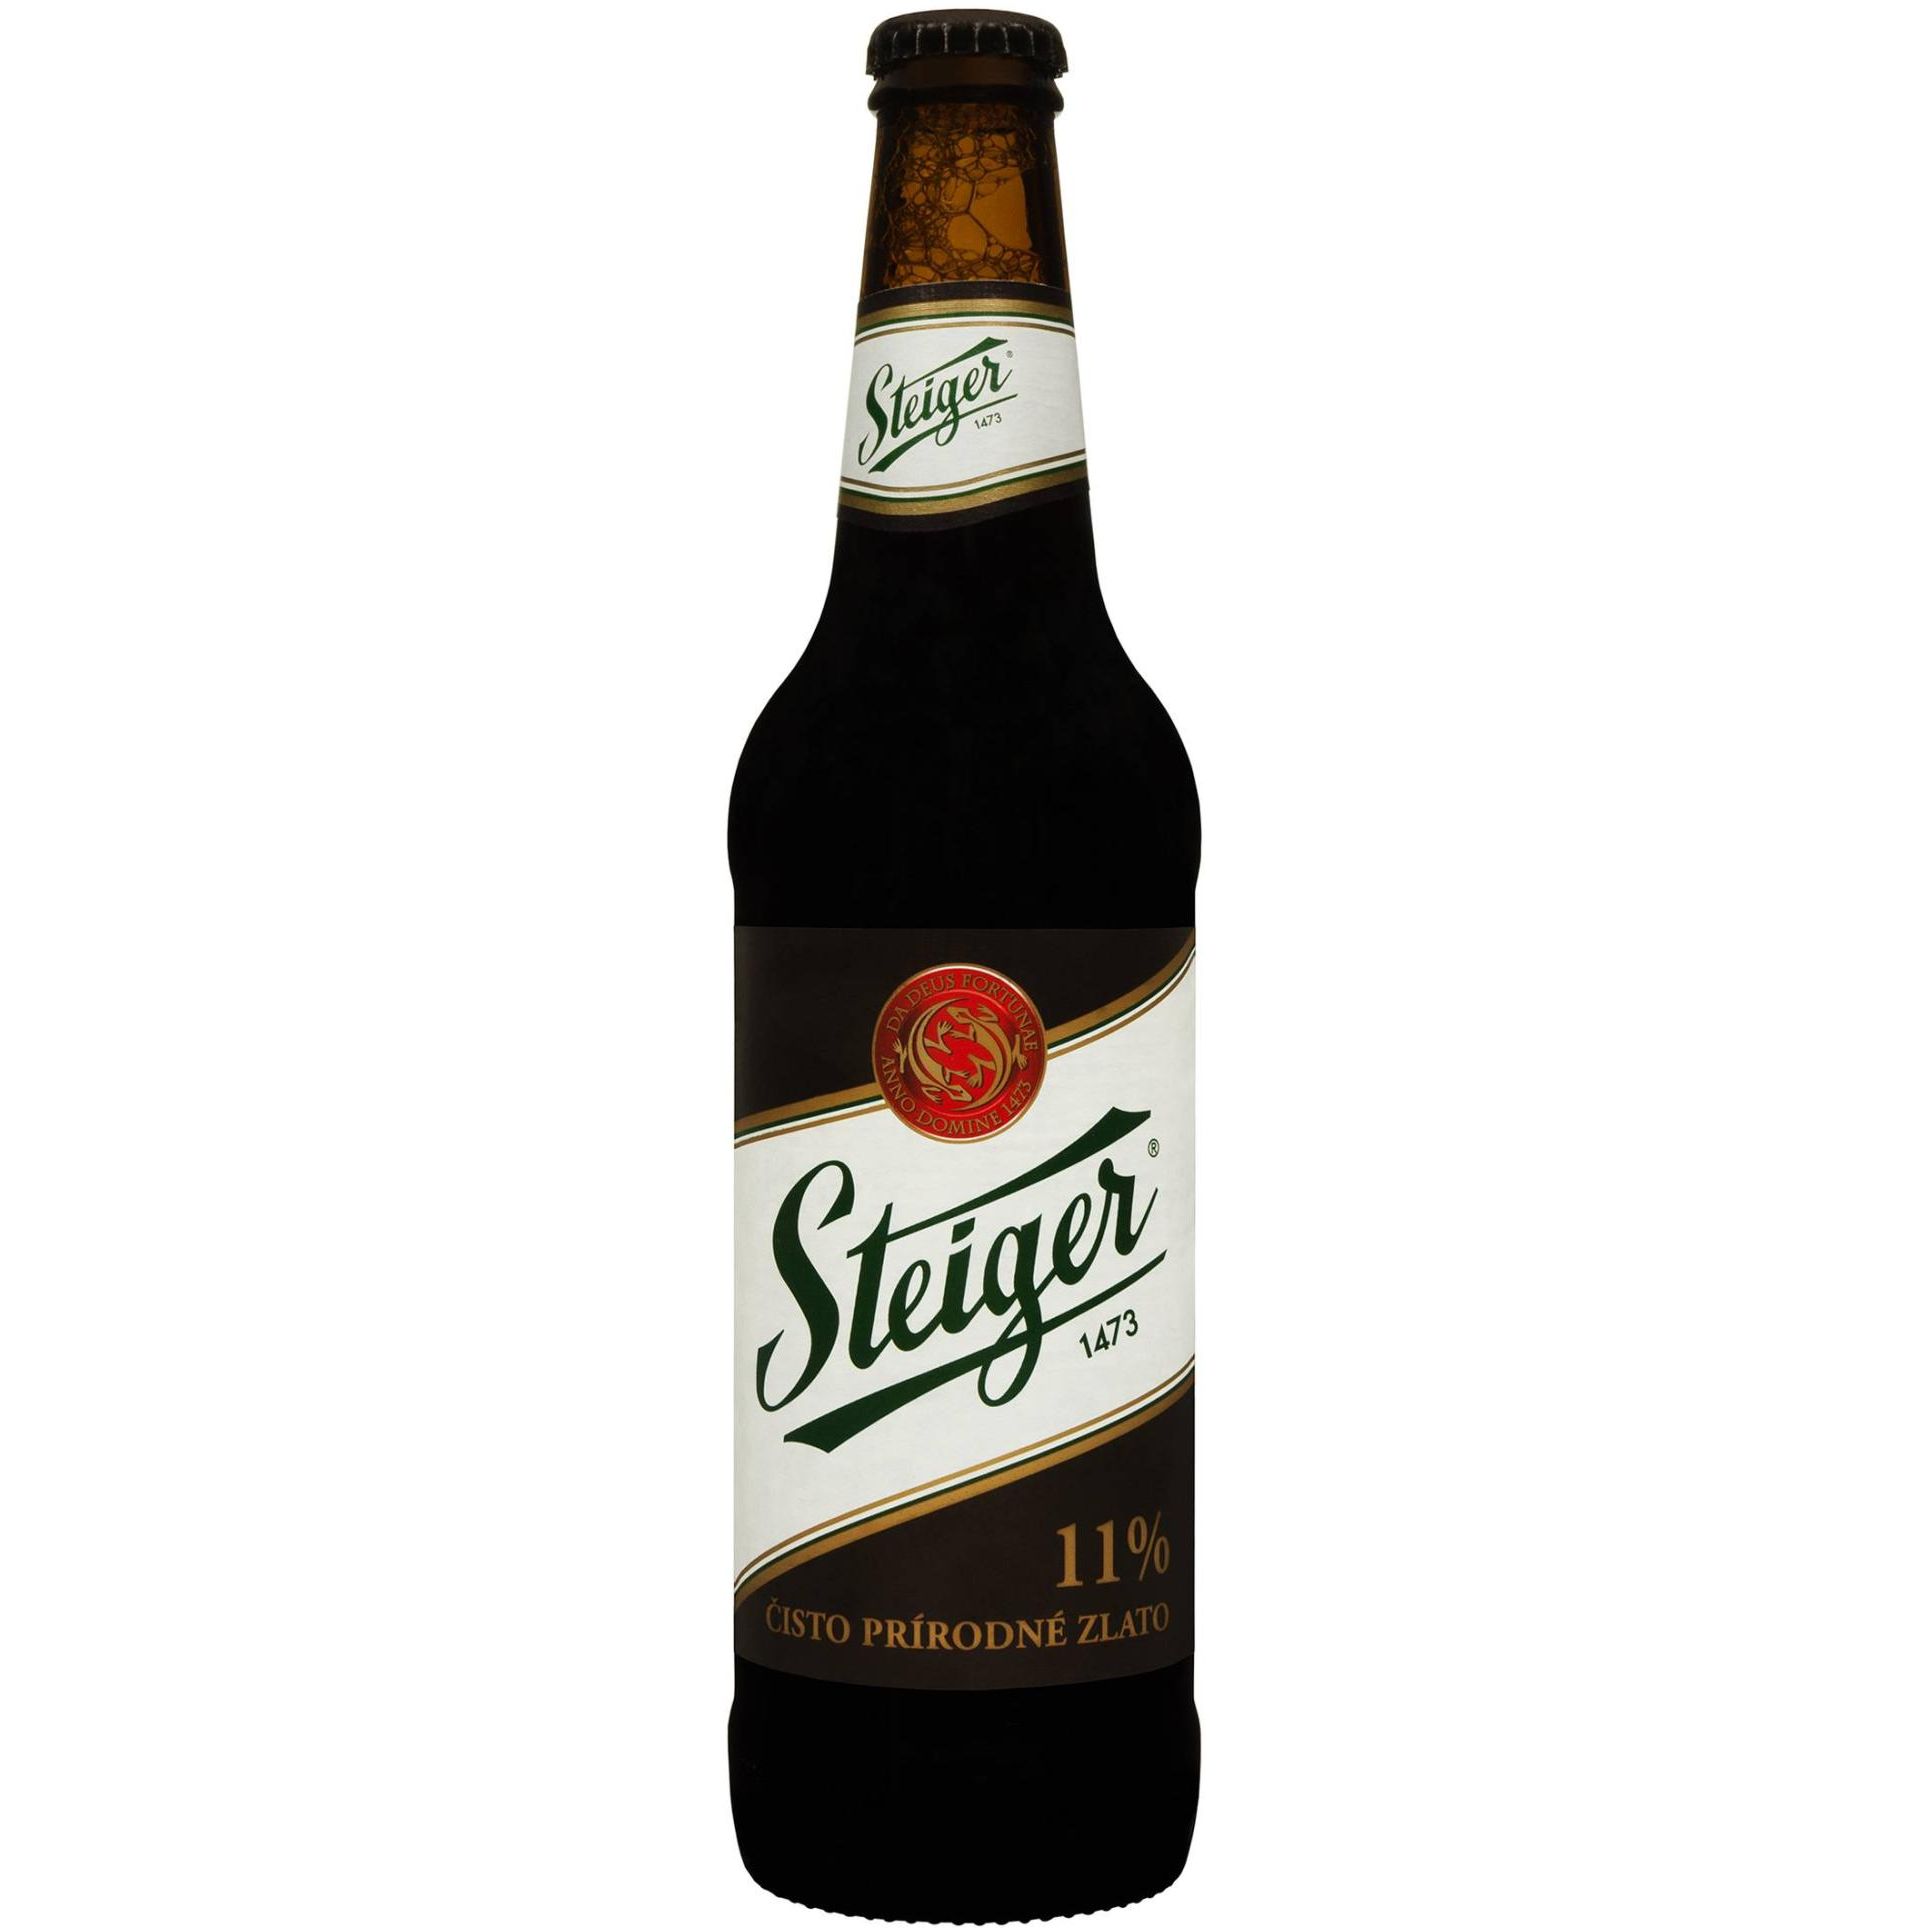 Пиво Steiger темное отфильтрованное 11% 0.5 л - фото 1